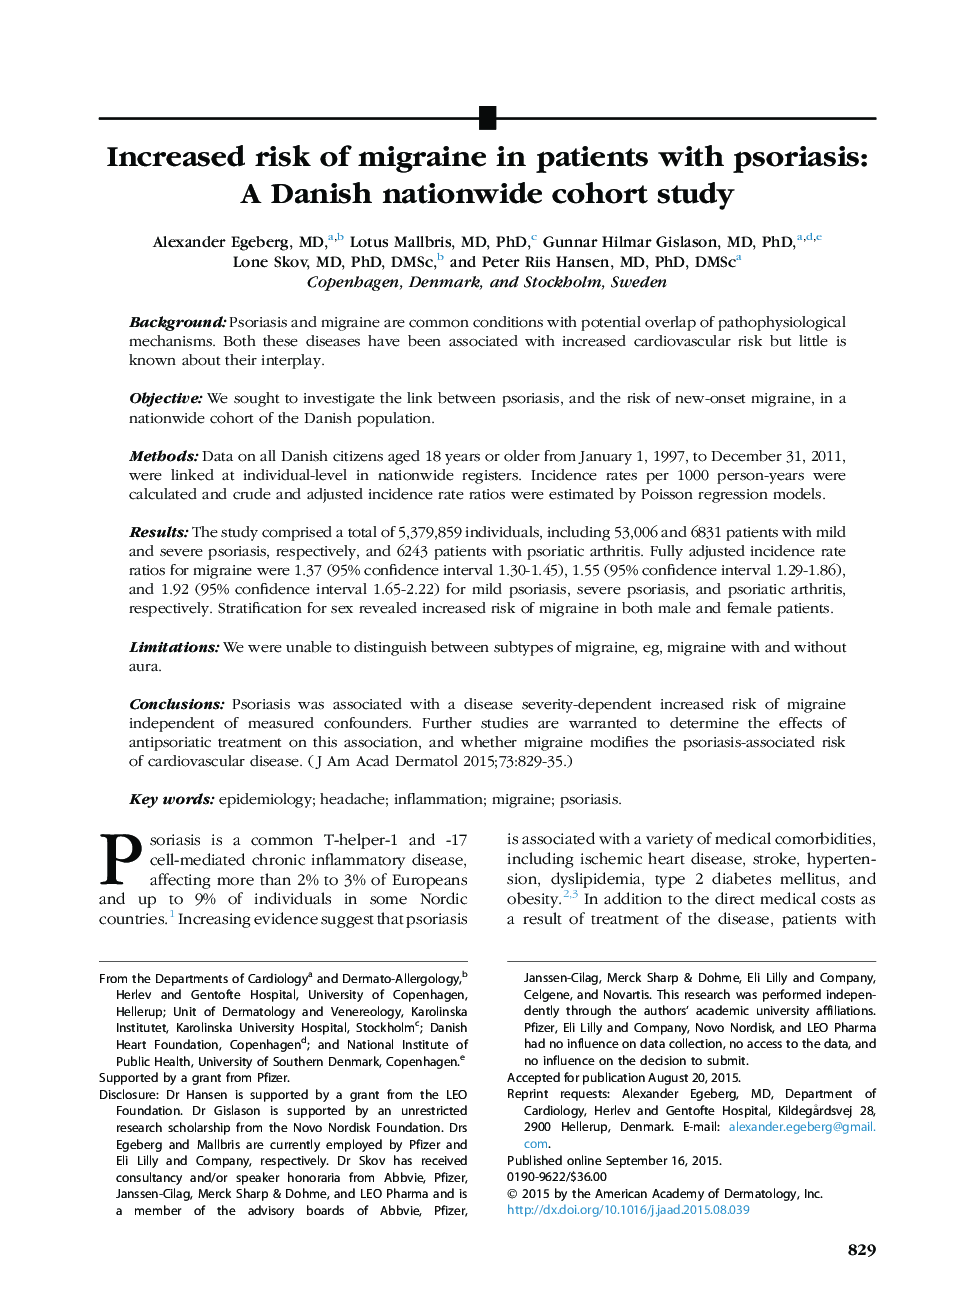 افزایش خطر ابتلا به میگرن در بیماران مبتلا به پسوریازیس: یک مطالعه کوهورت در سراسر کشور دانمارک 